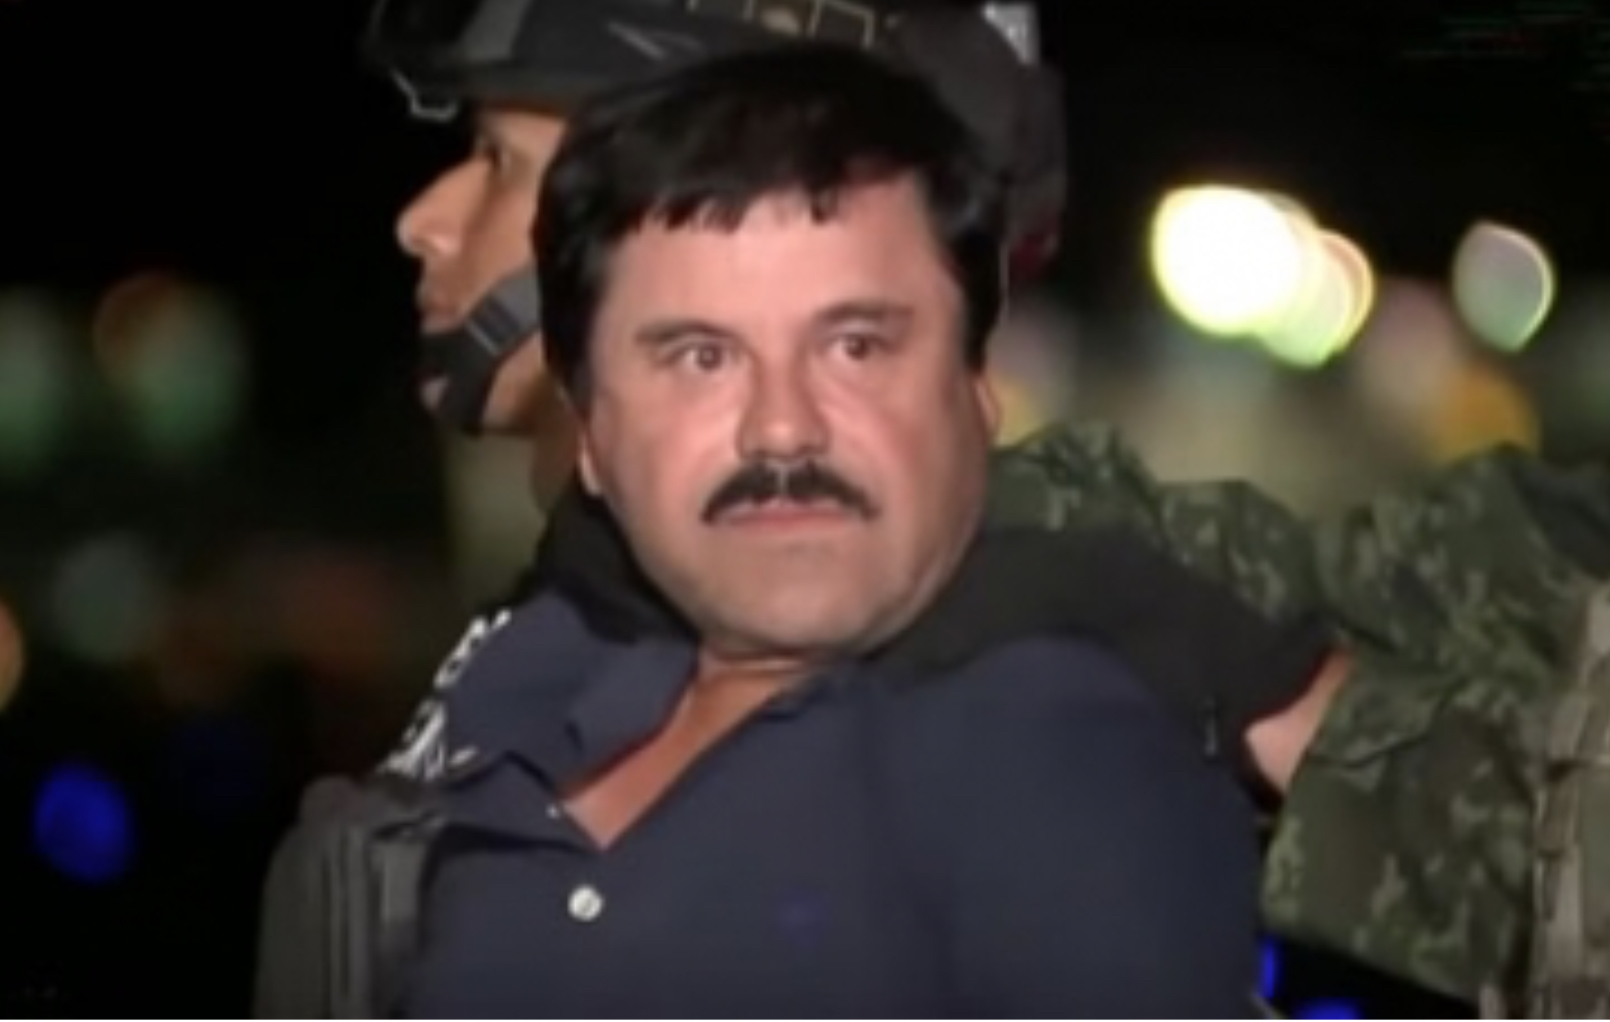 Prisión ADX «Supermax» posible destino de «El Chapo» Guzmán